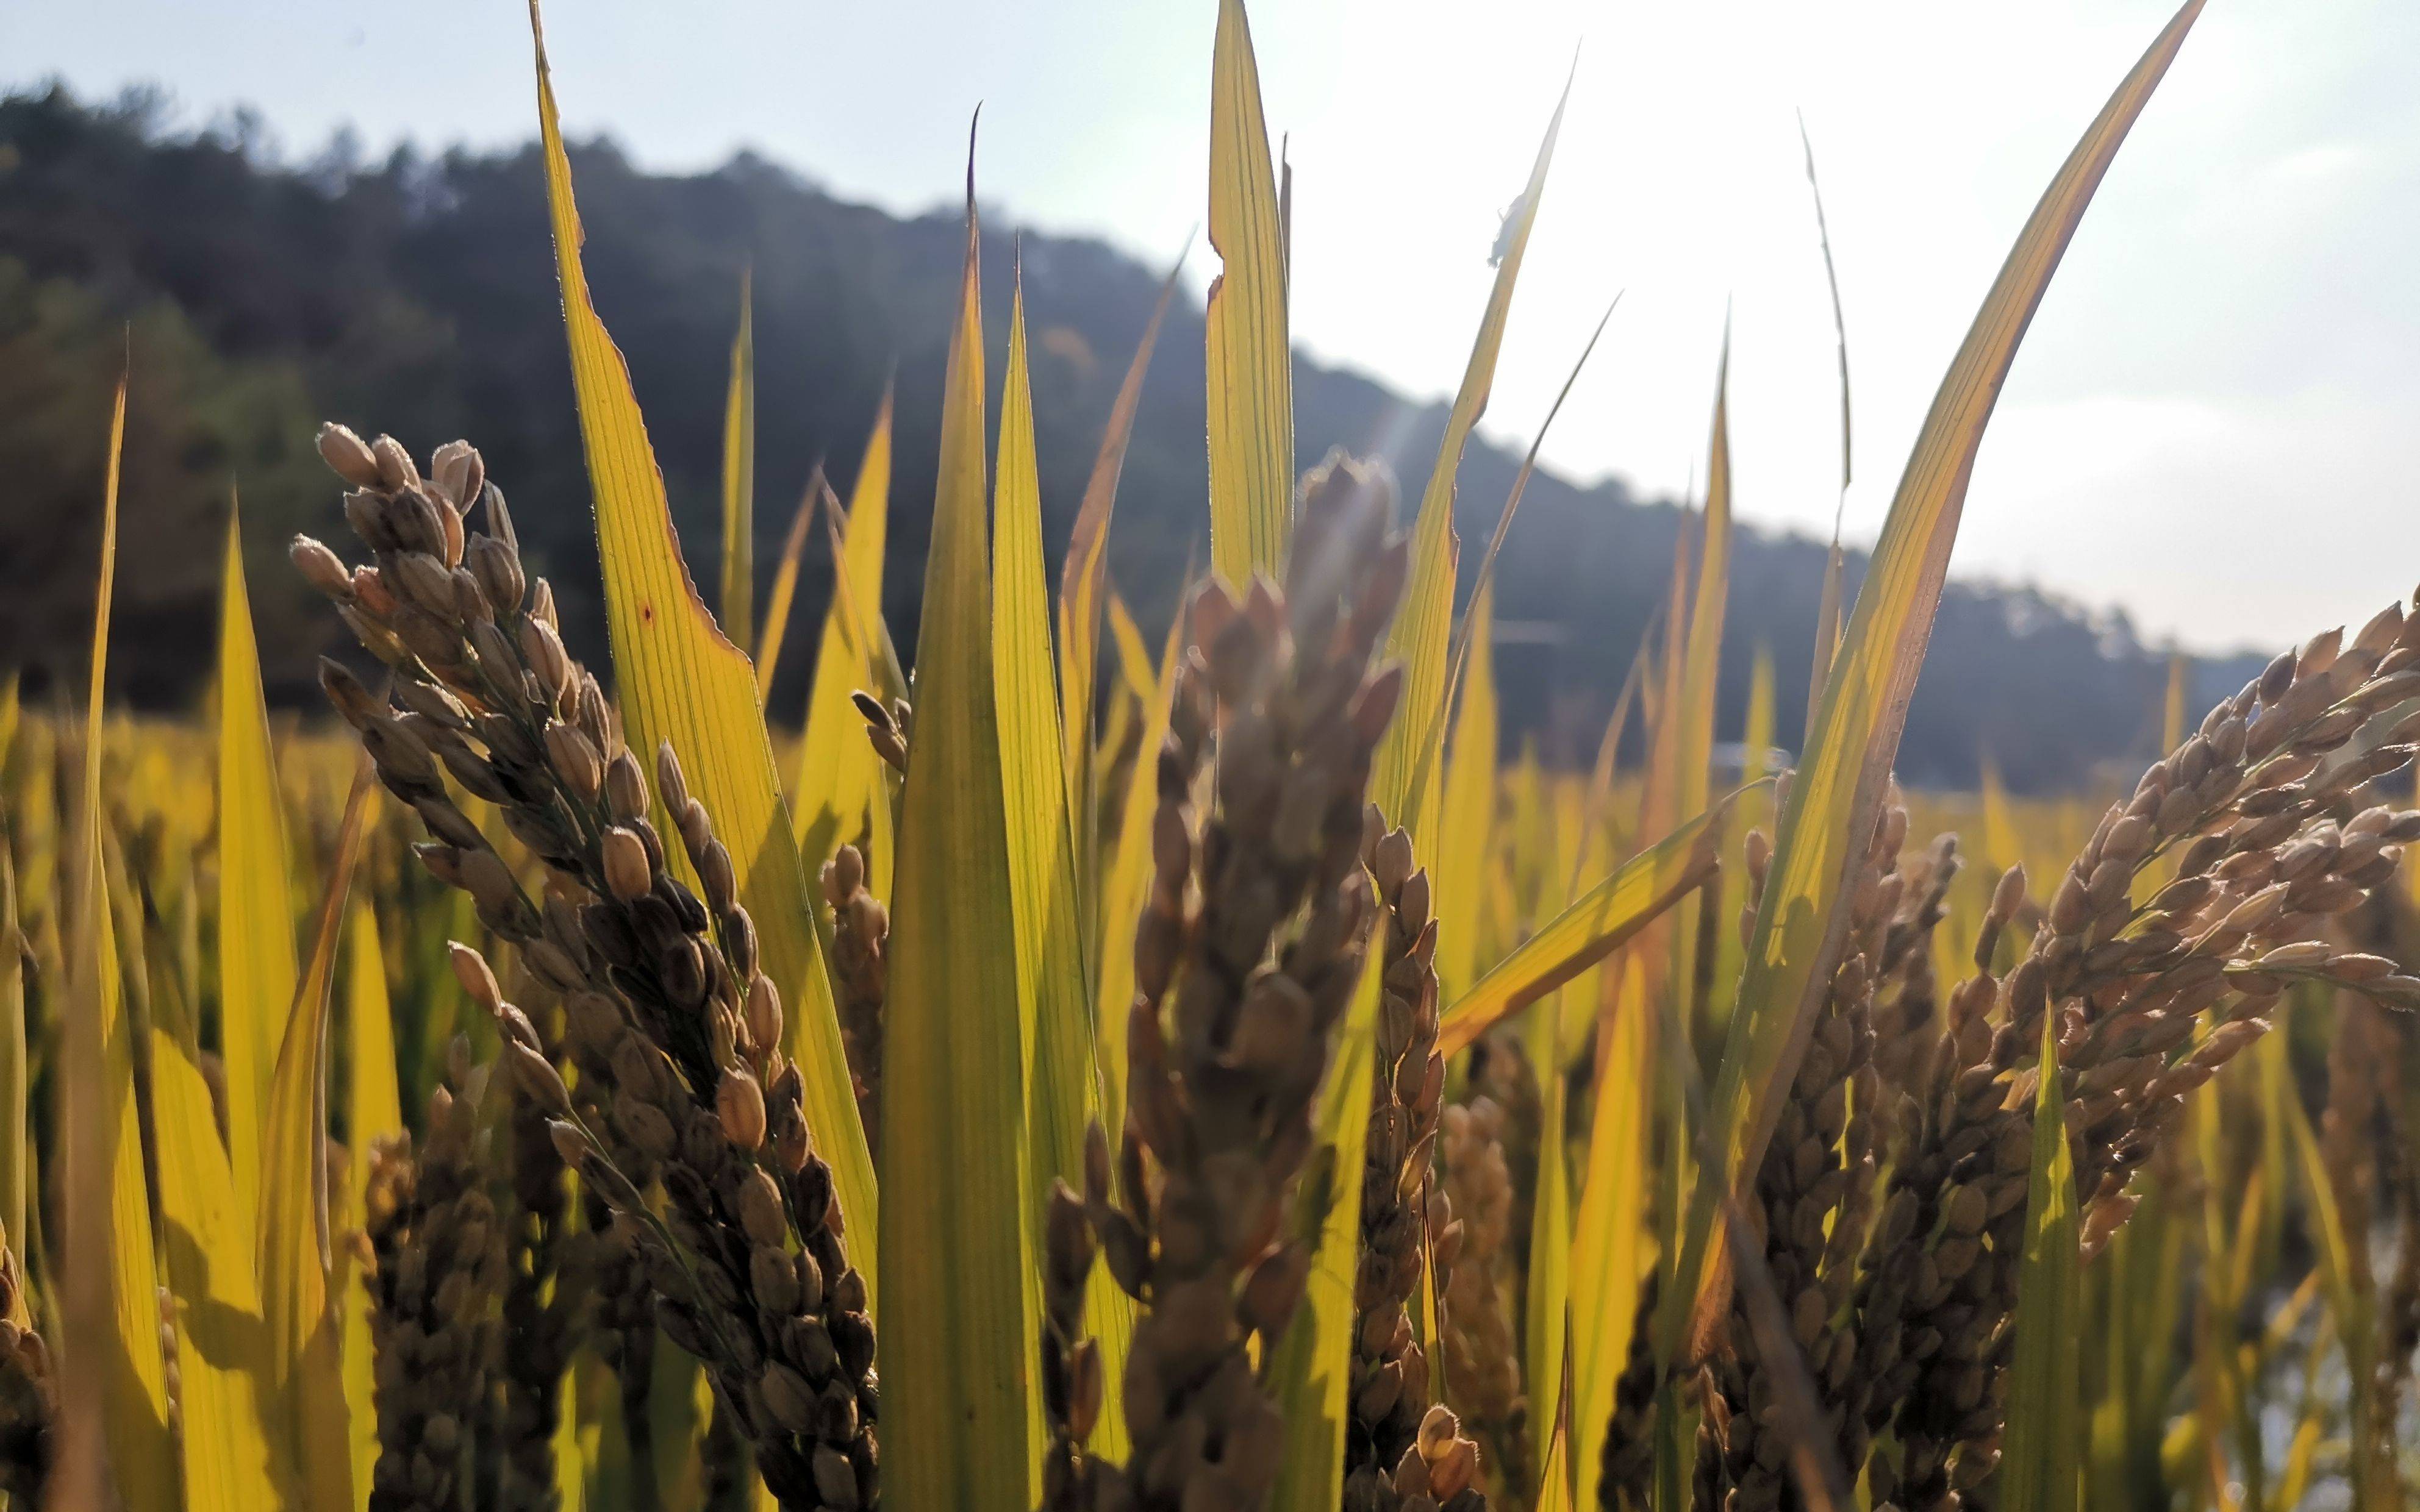 大气|稻田释放甲烷 影响可能被高估